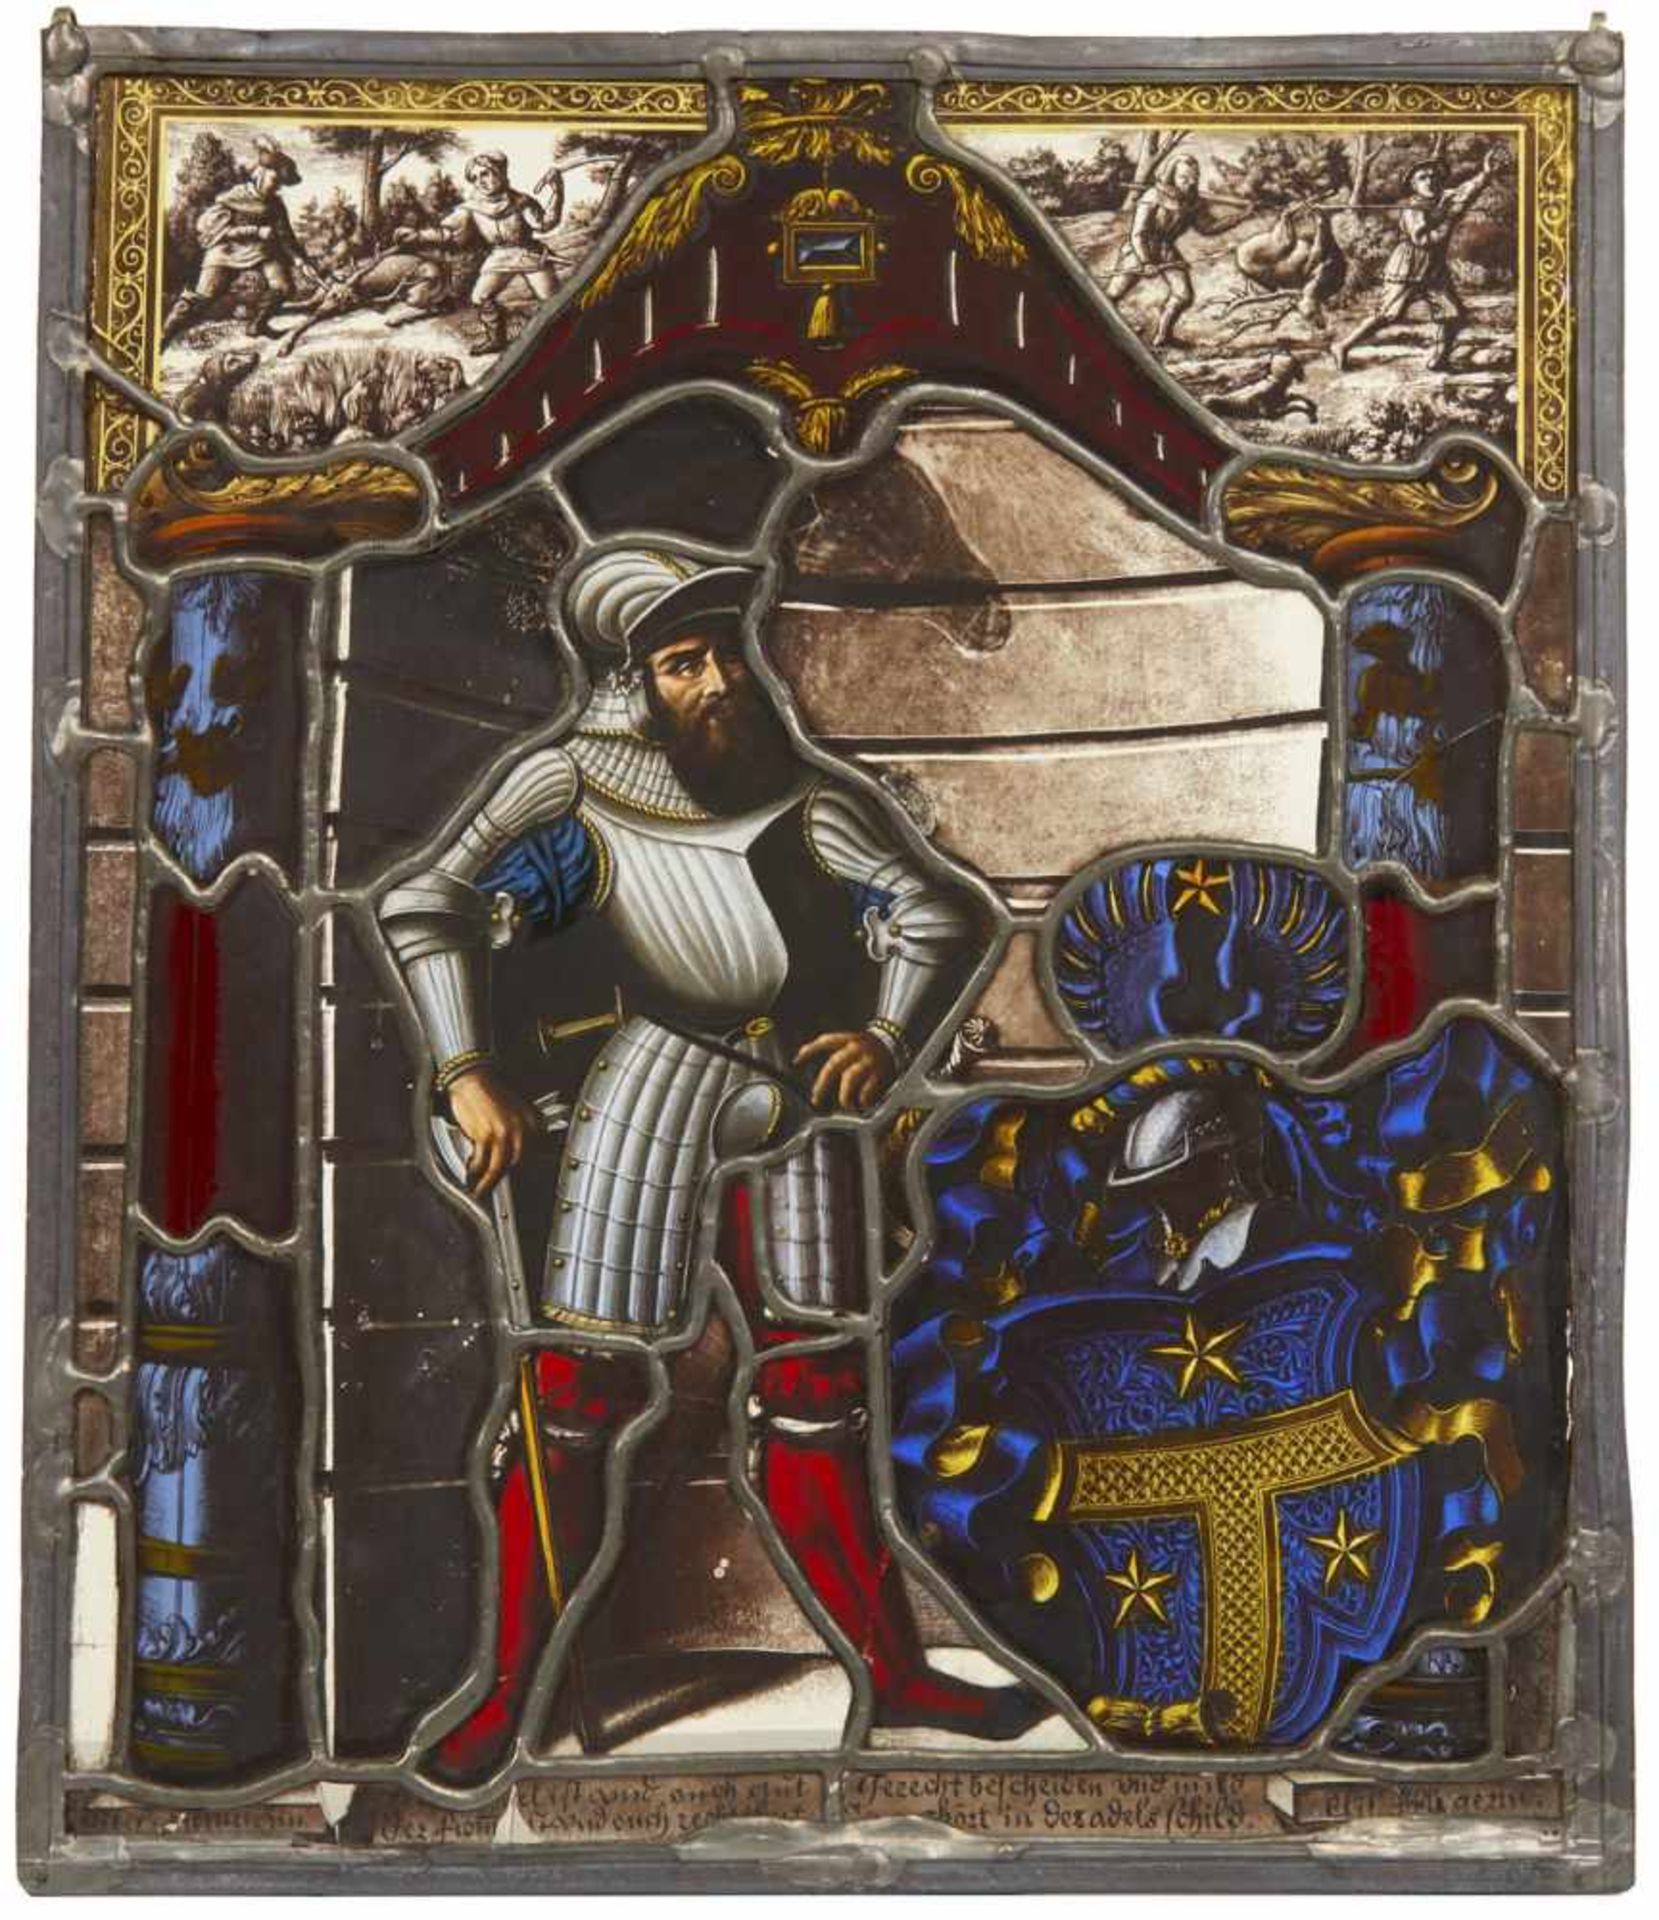 Bleiglasscheibe mit Ritter und WappendarstellungWohl Schweiz, 17. Jahrhundert34 x 28,5 cmZentrale